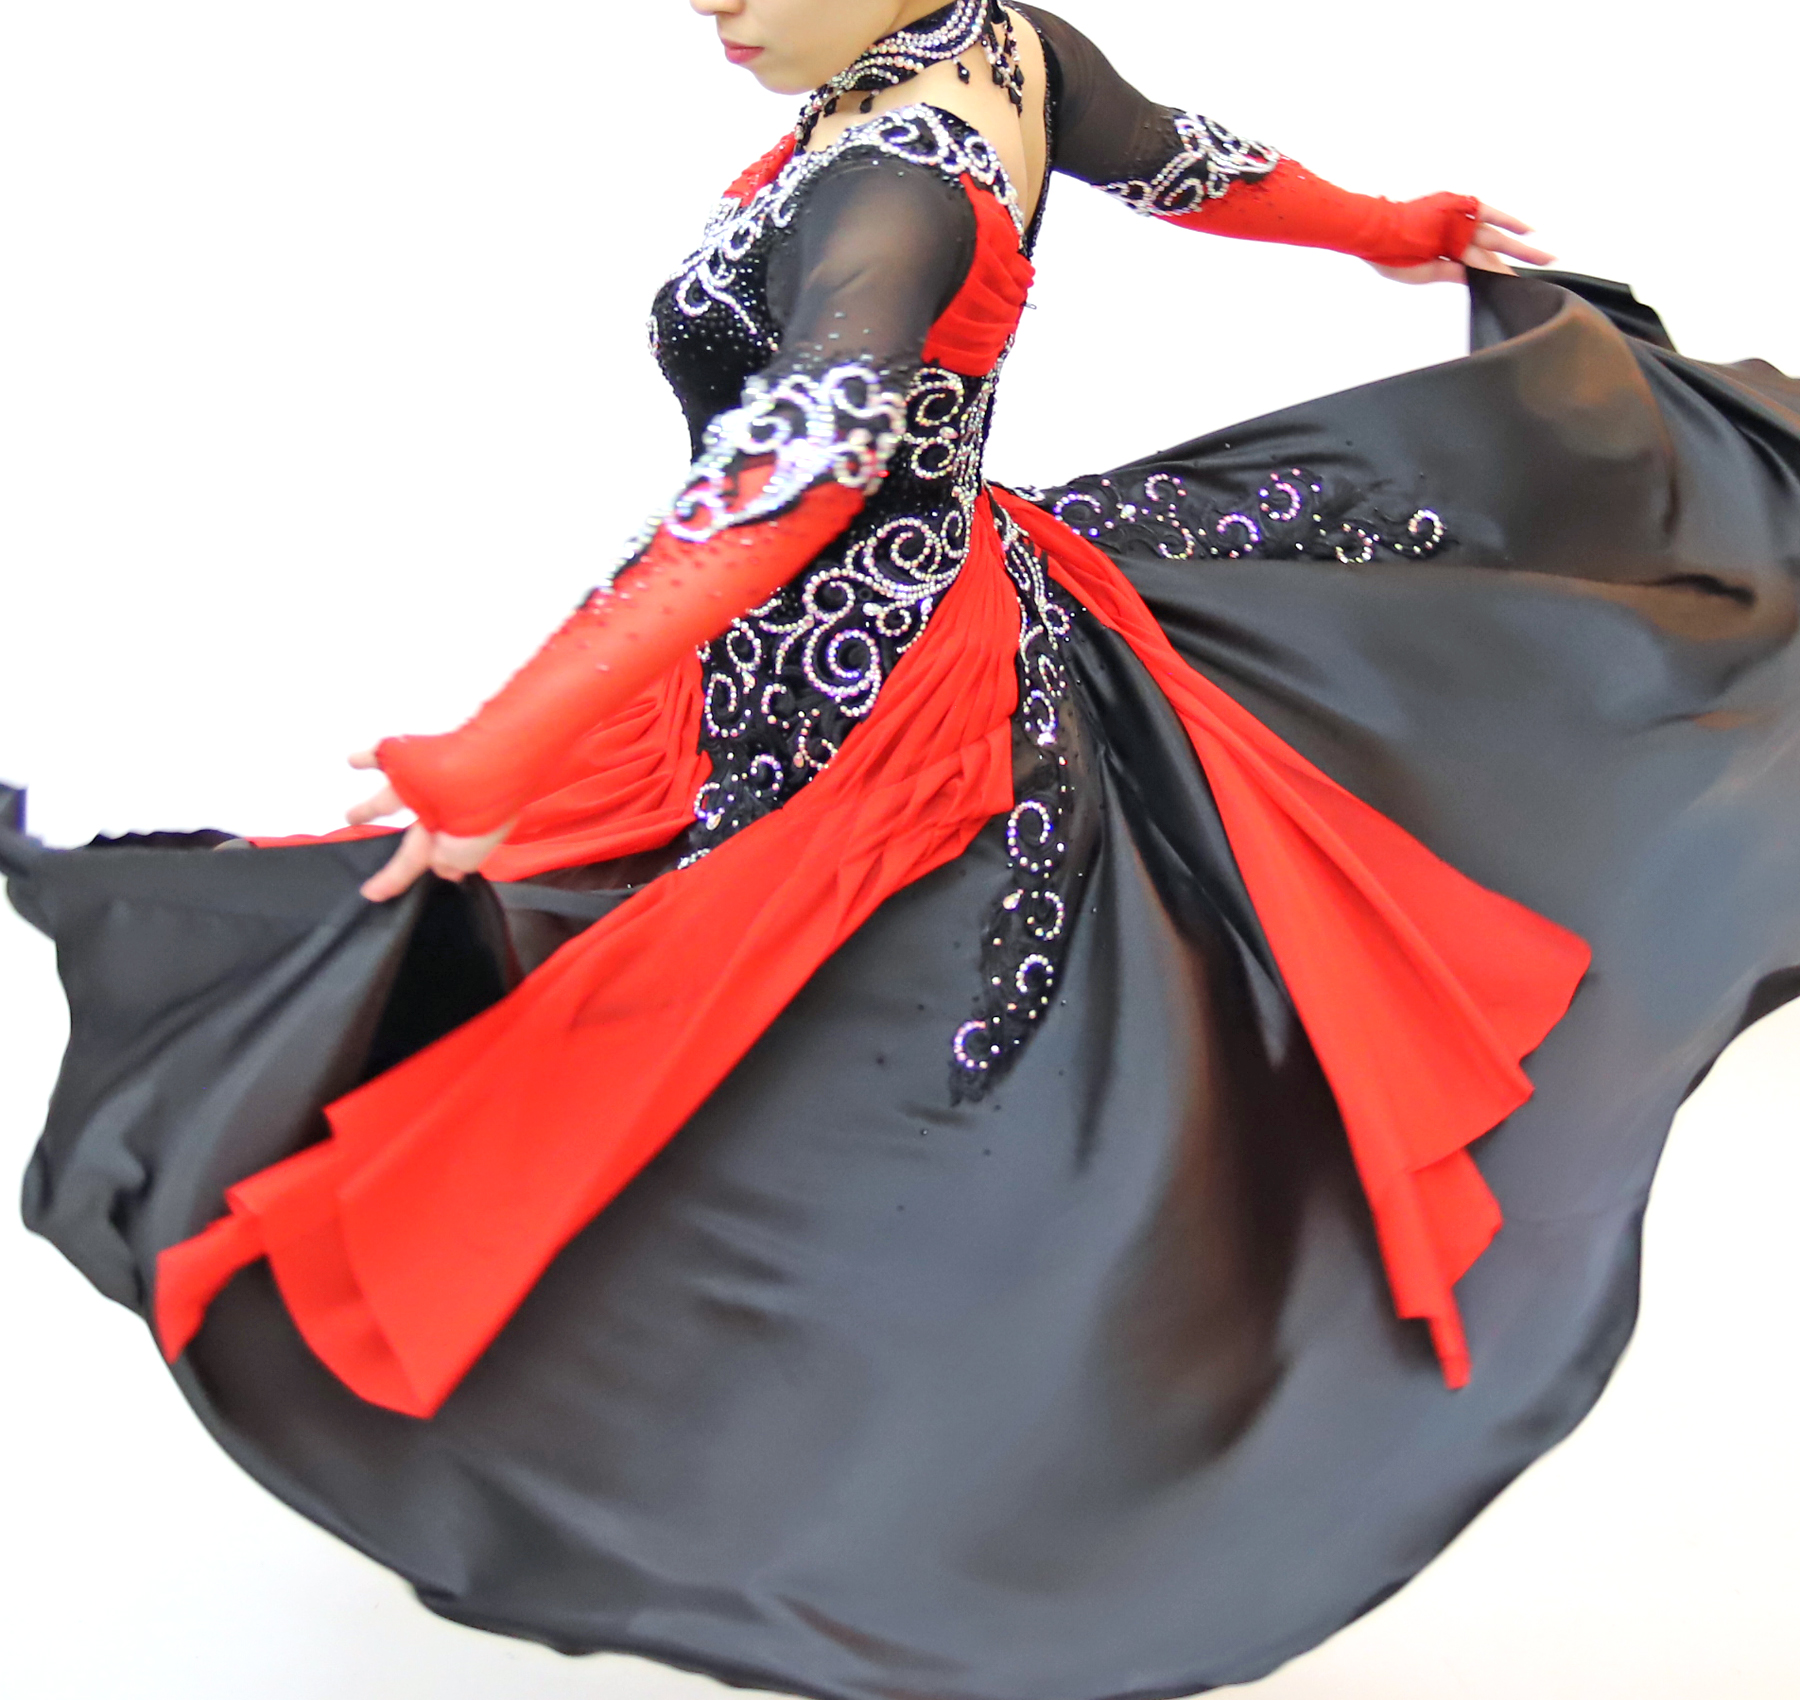 赤・黒色の社交ダンス衣装・ドレス、パソドブレ用ドレス